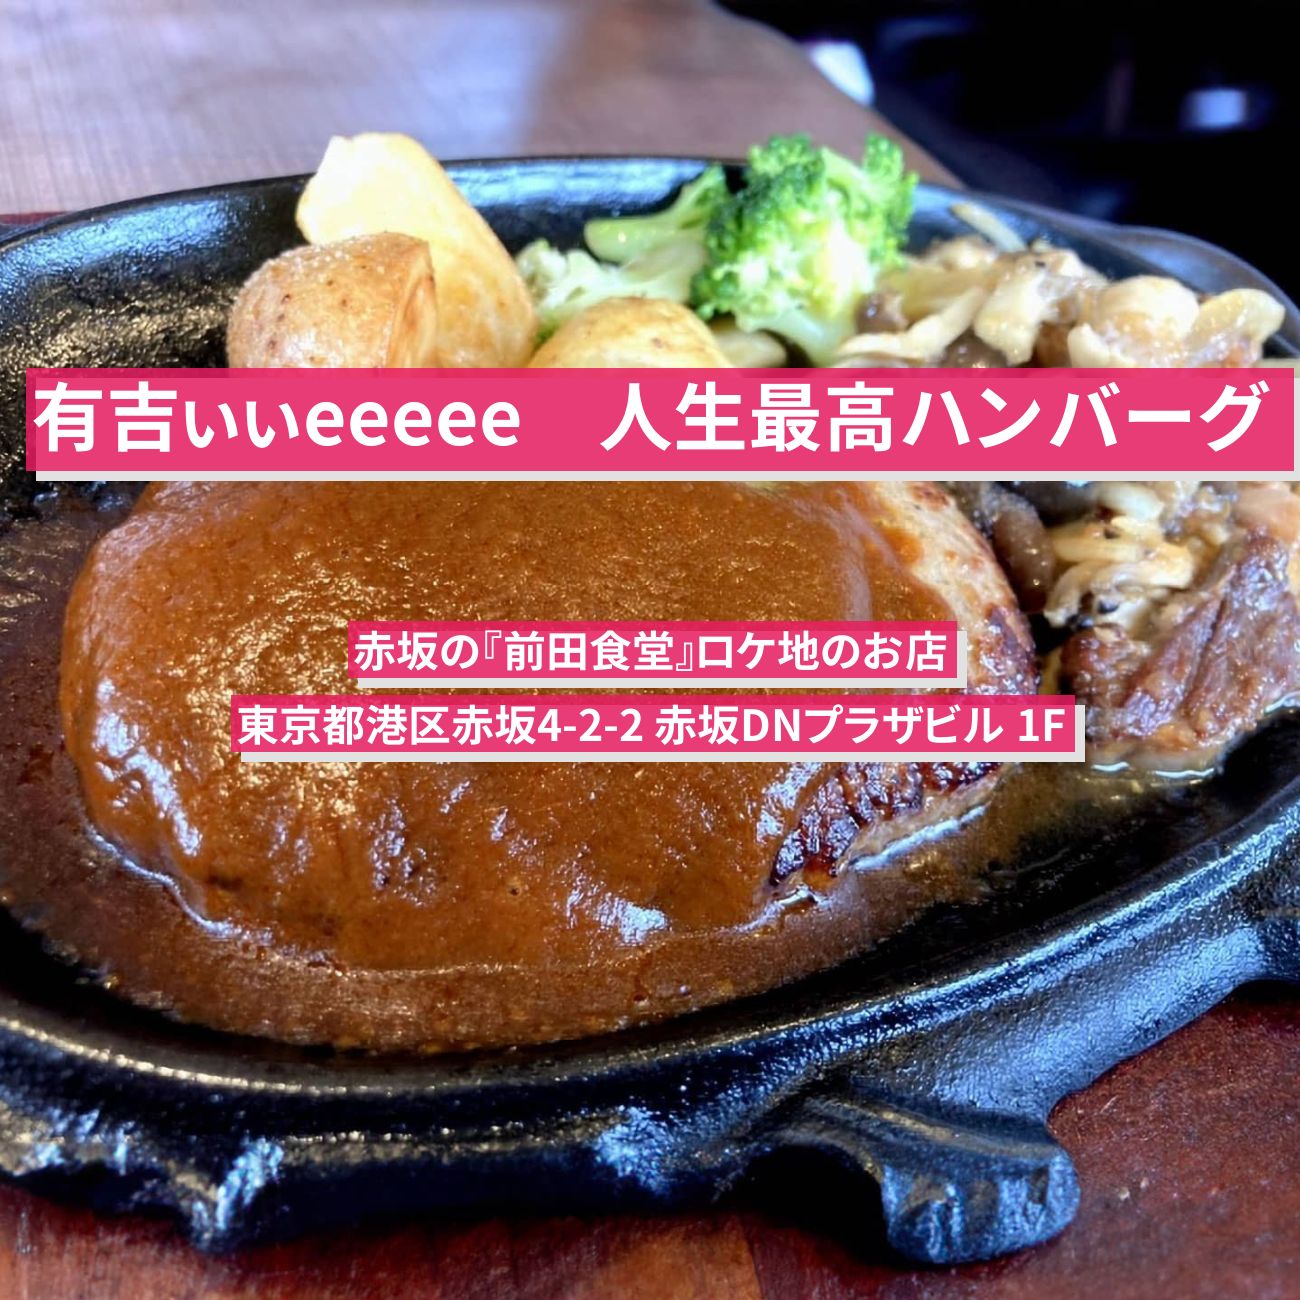 【有吉ぃぃeeeee】人生最高ハンバーグ『前田食堂』赤坂のロケ地のお店